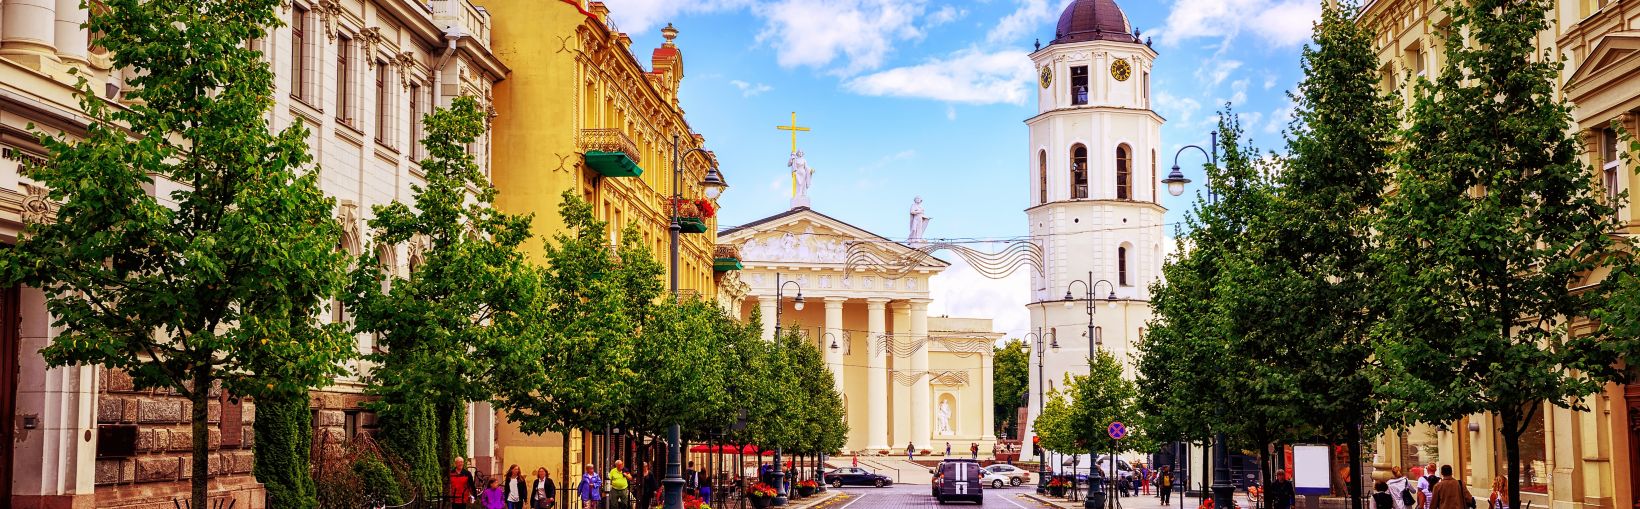 Populārā Katedrāles laukuma iepirkšanās un ēdināšanas vieta, kas redzama no Ģedimina avēnijas, Viļņas galvenā iela, Lietuva.